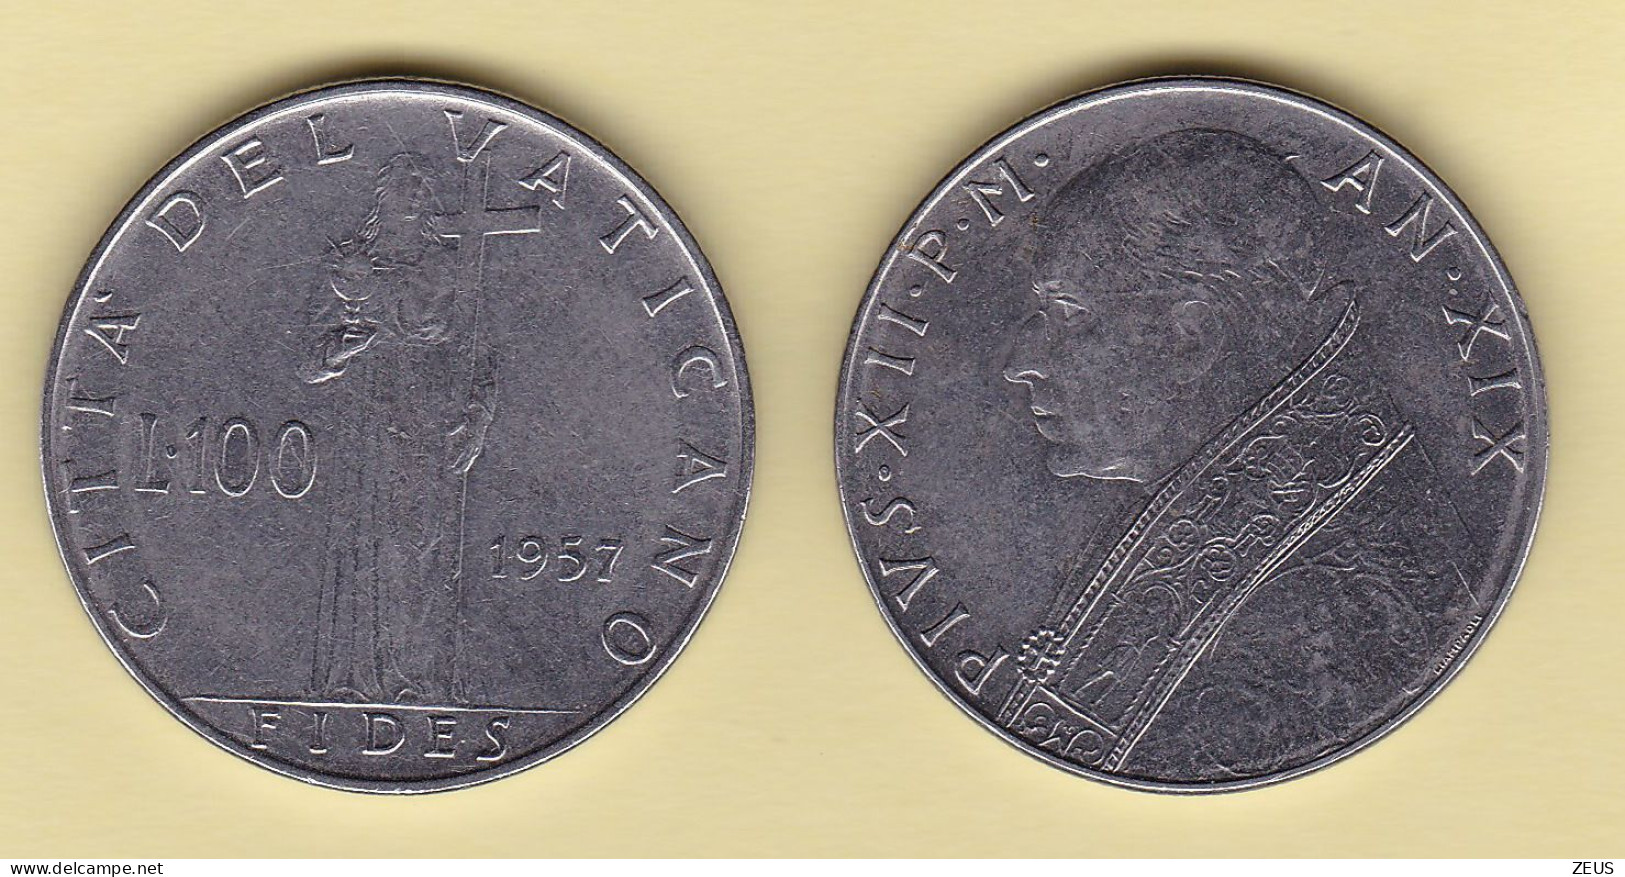 100 Lire 1957 VATICANO PIO XII - Vatican